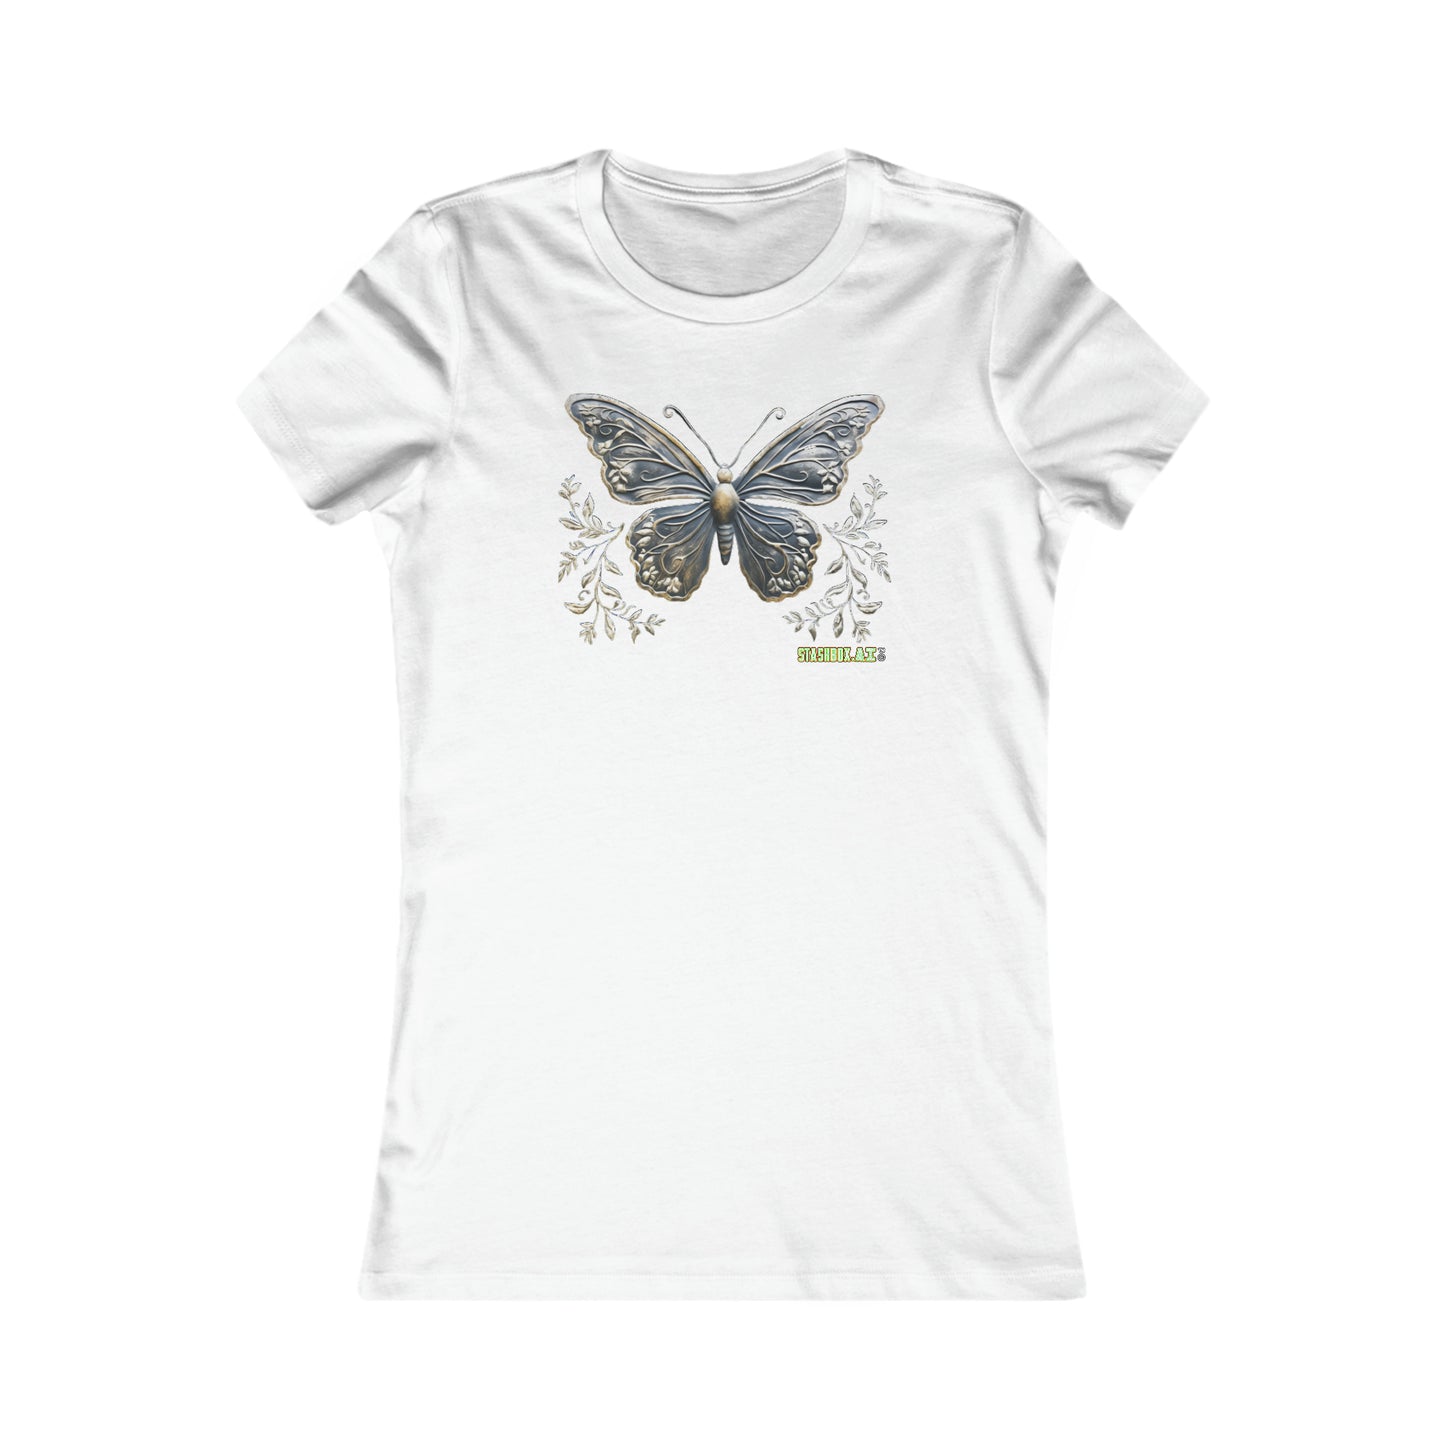 Women's Favorite T-Shirt Bronze Butterfly Design 015